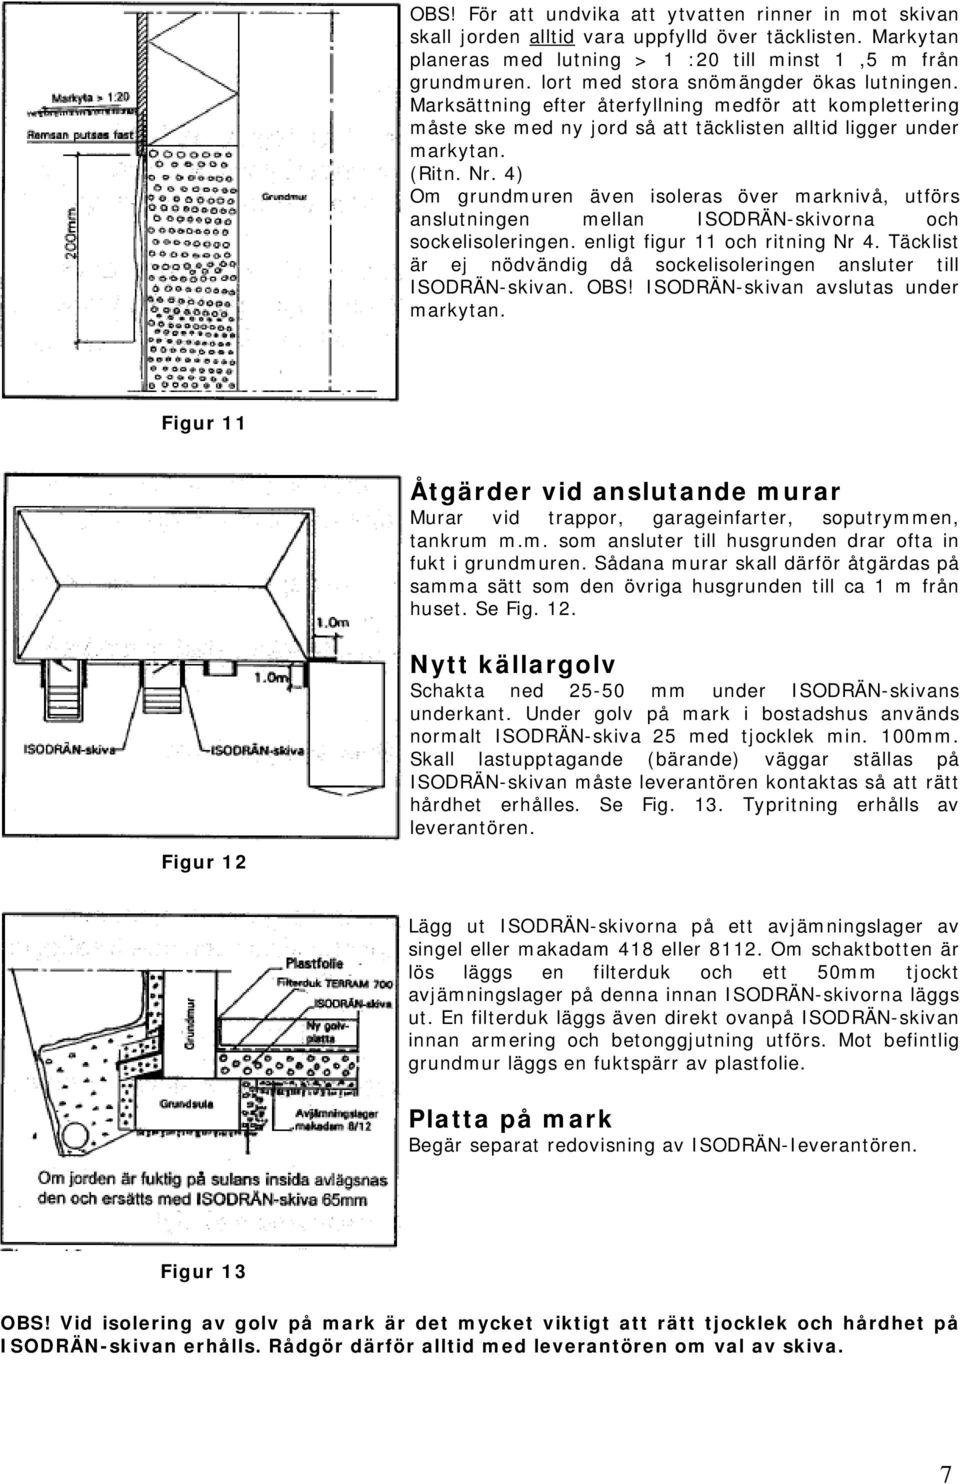 4) Om grundmuren även isoleras över marknivå, utförs anslutningen mellan ISODRÄN-skivorna och sockelisoleringen. enligt figur 11 och ritning Nr 4.